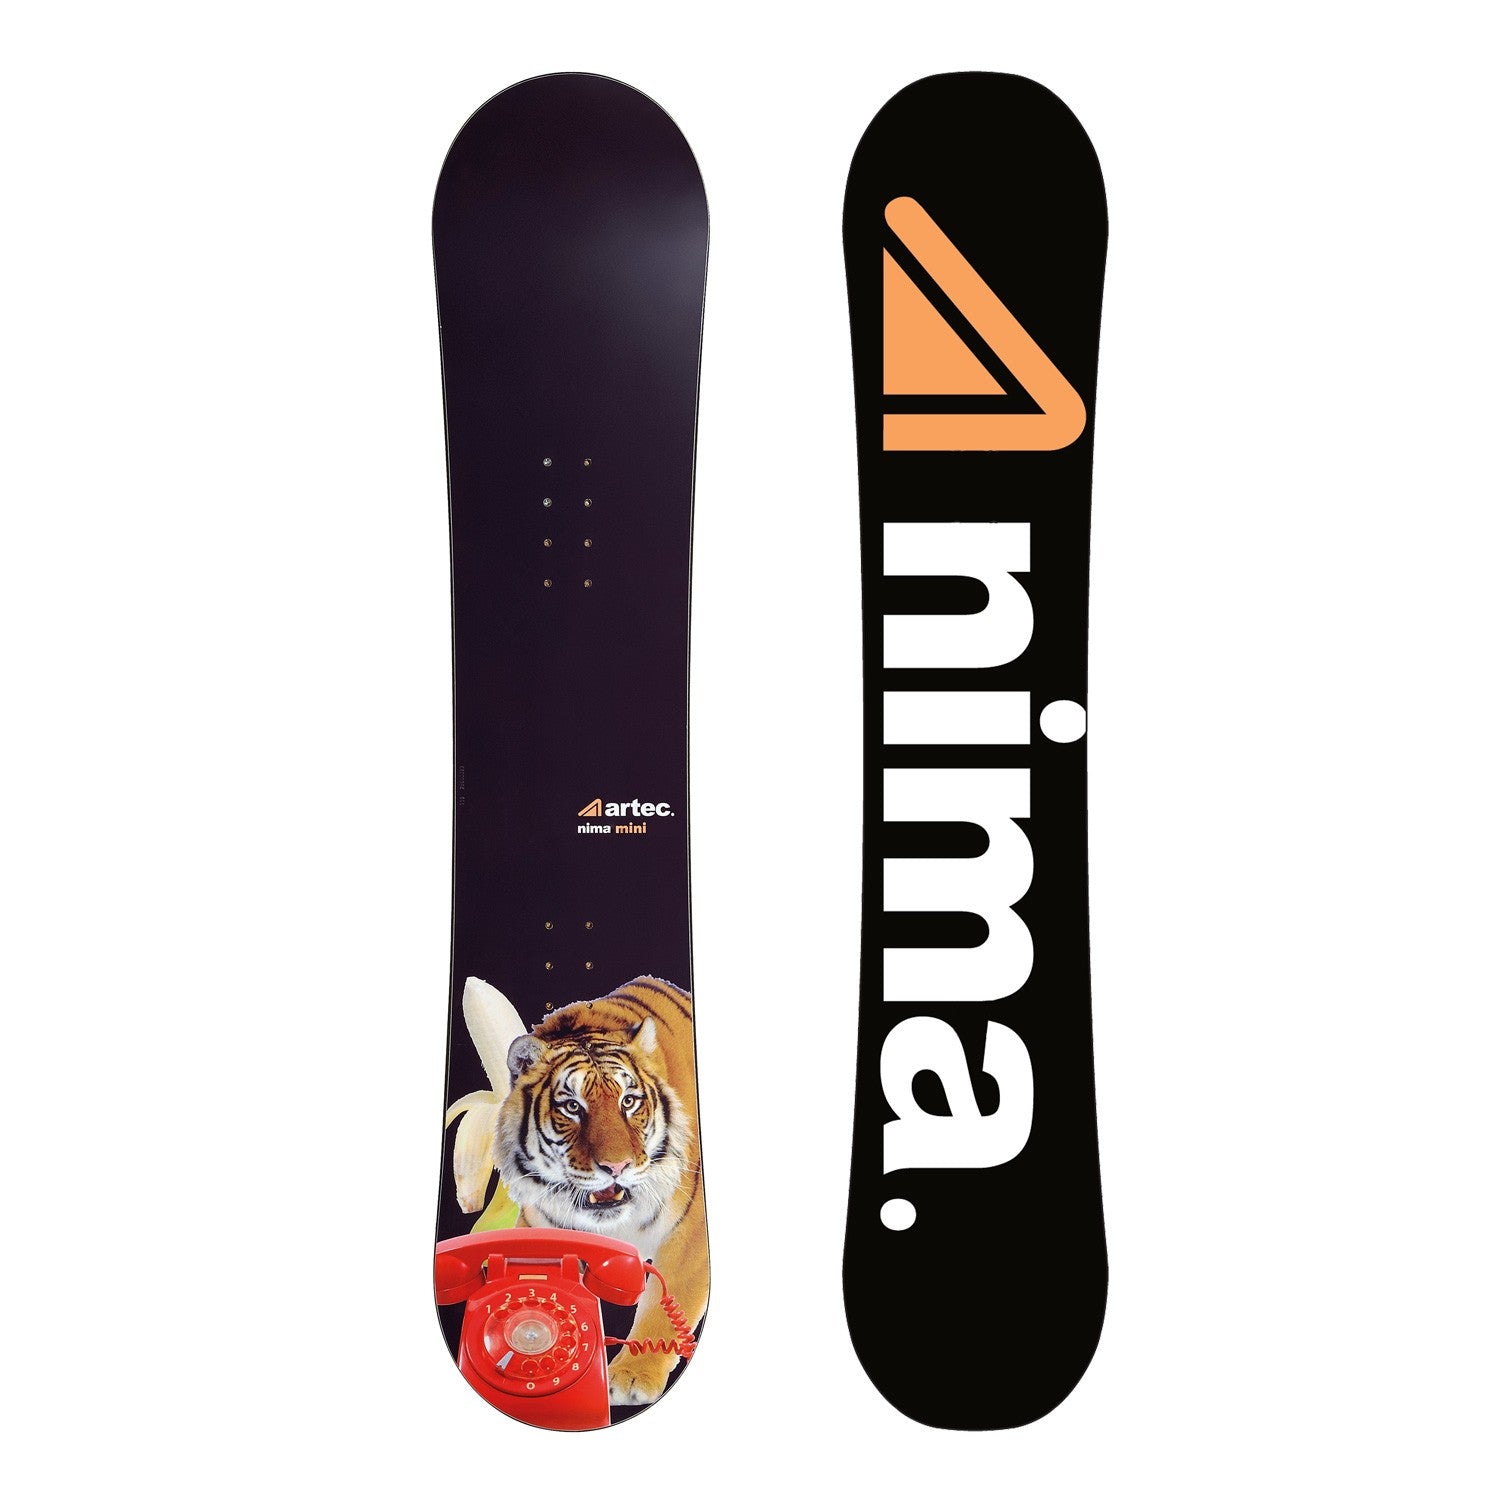 ARTEC Mini Nima 95cm Snowboard Board